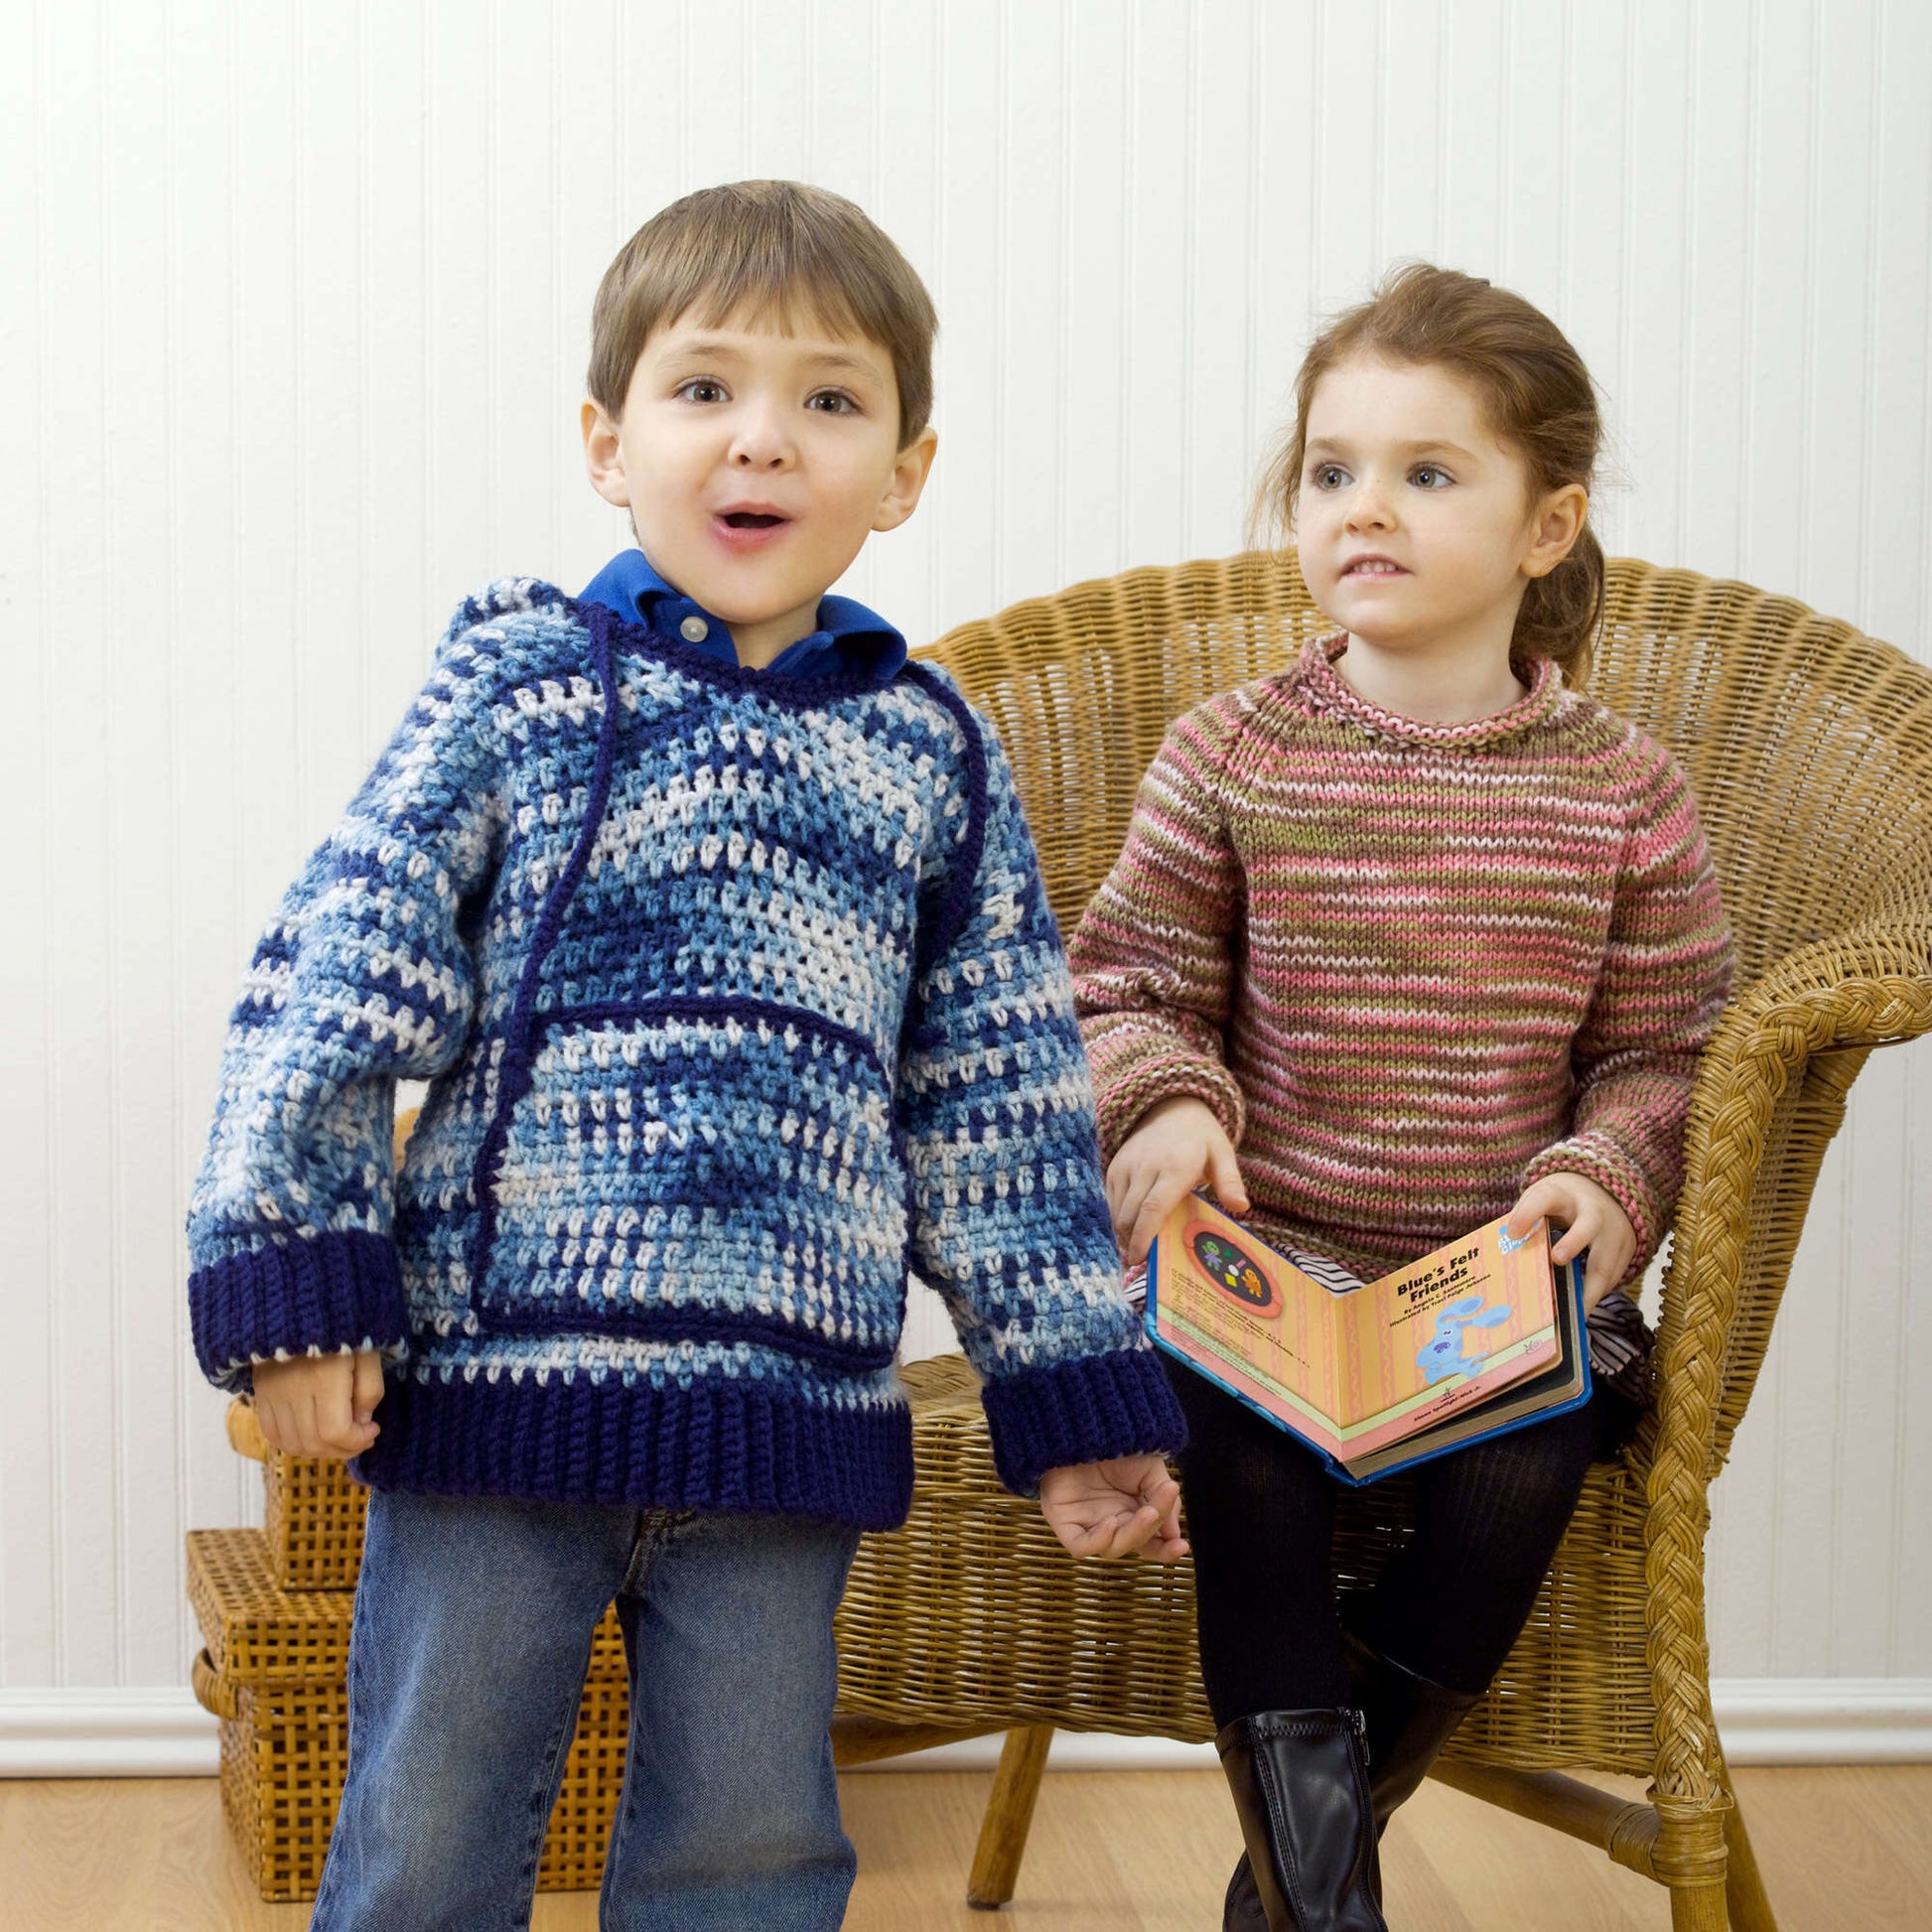 Free Red Heart Child's Hooded Sweatshirt Crochet Pattern